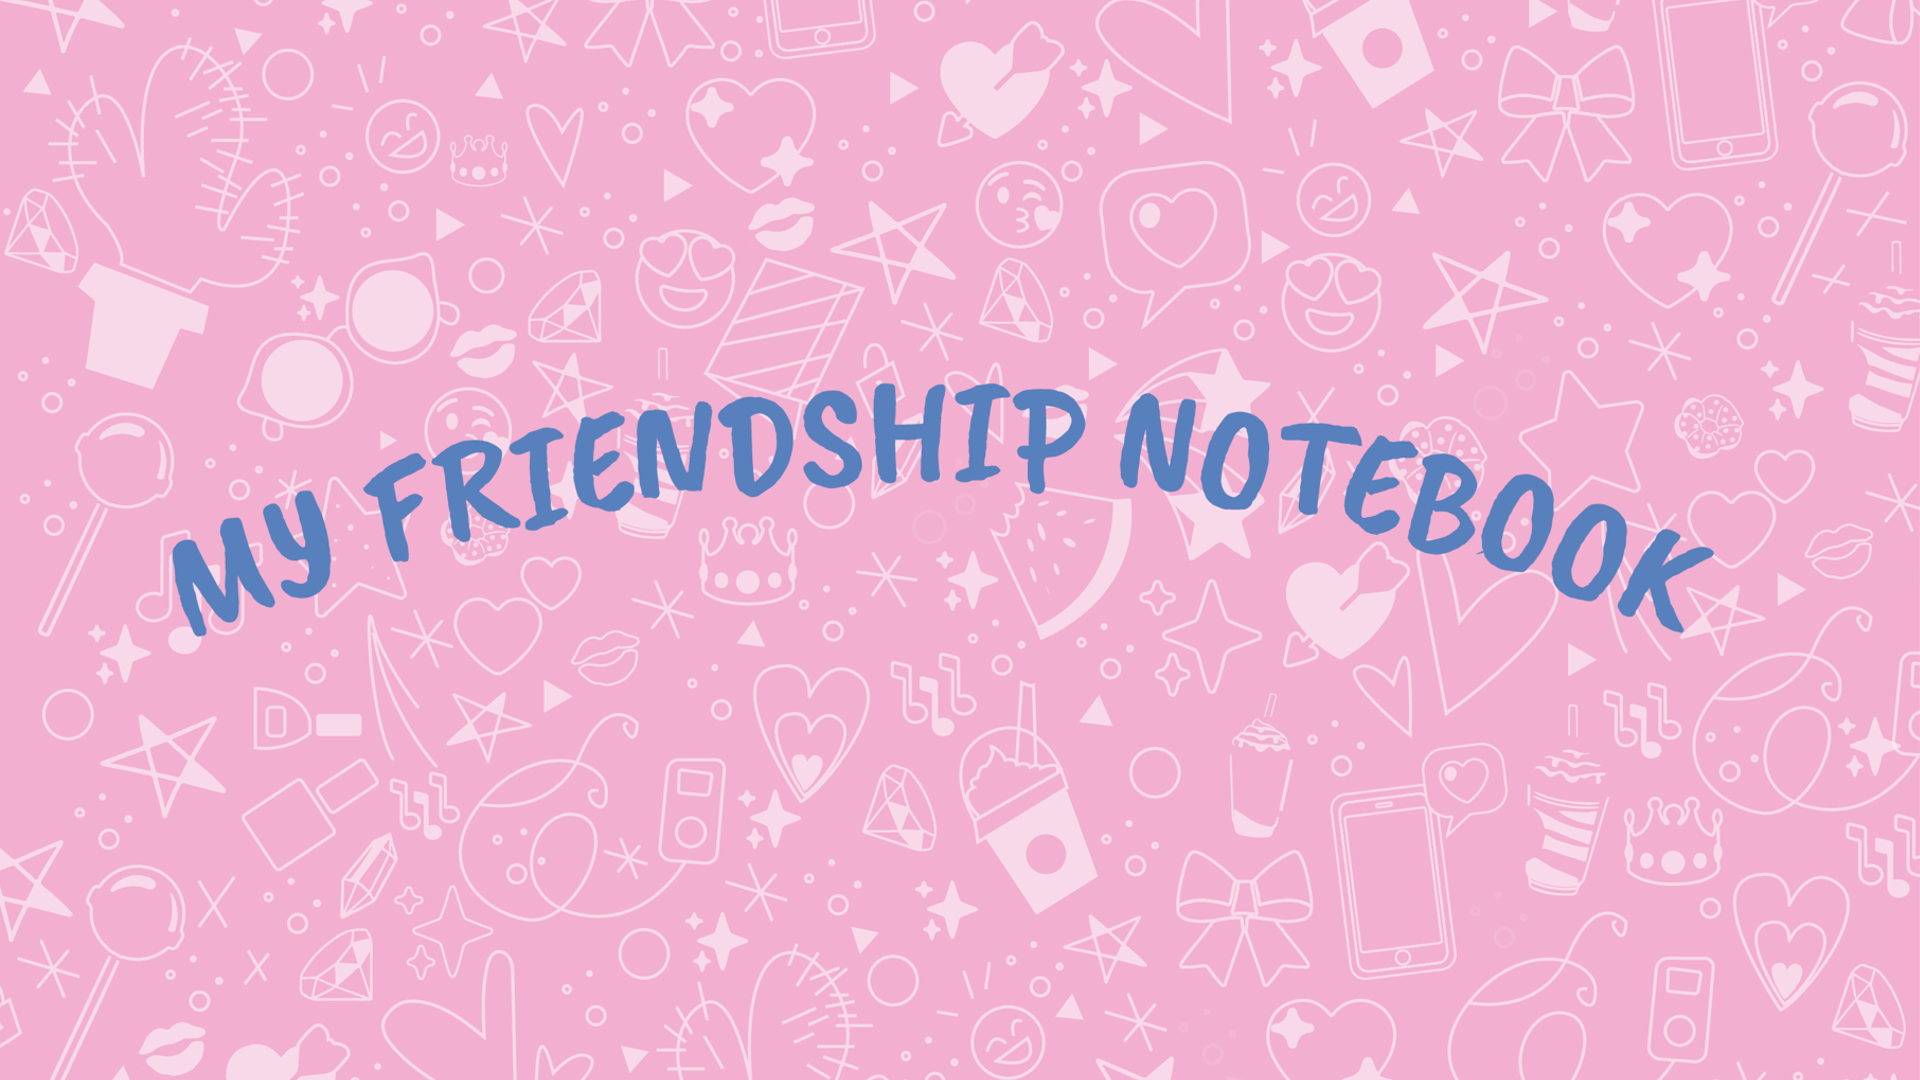 My friendship notebook